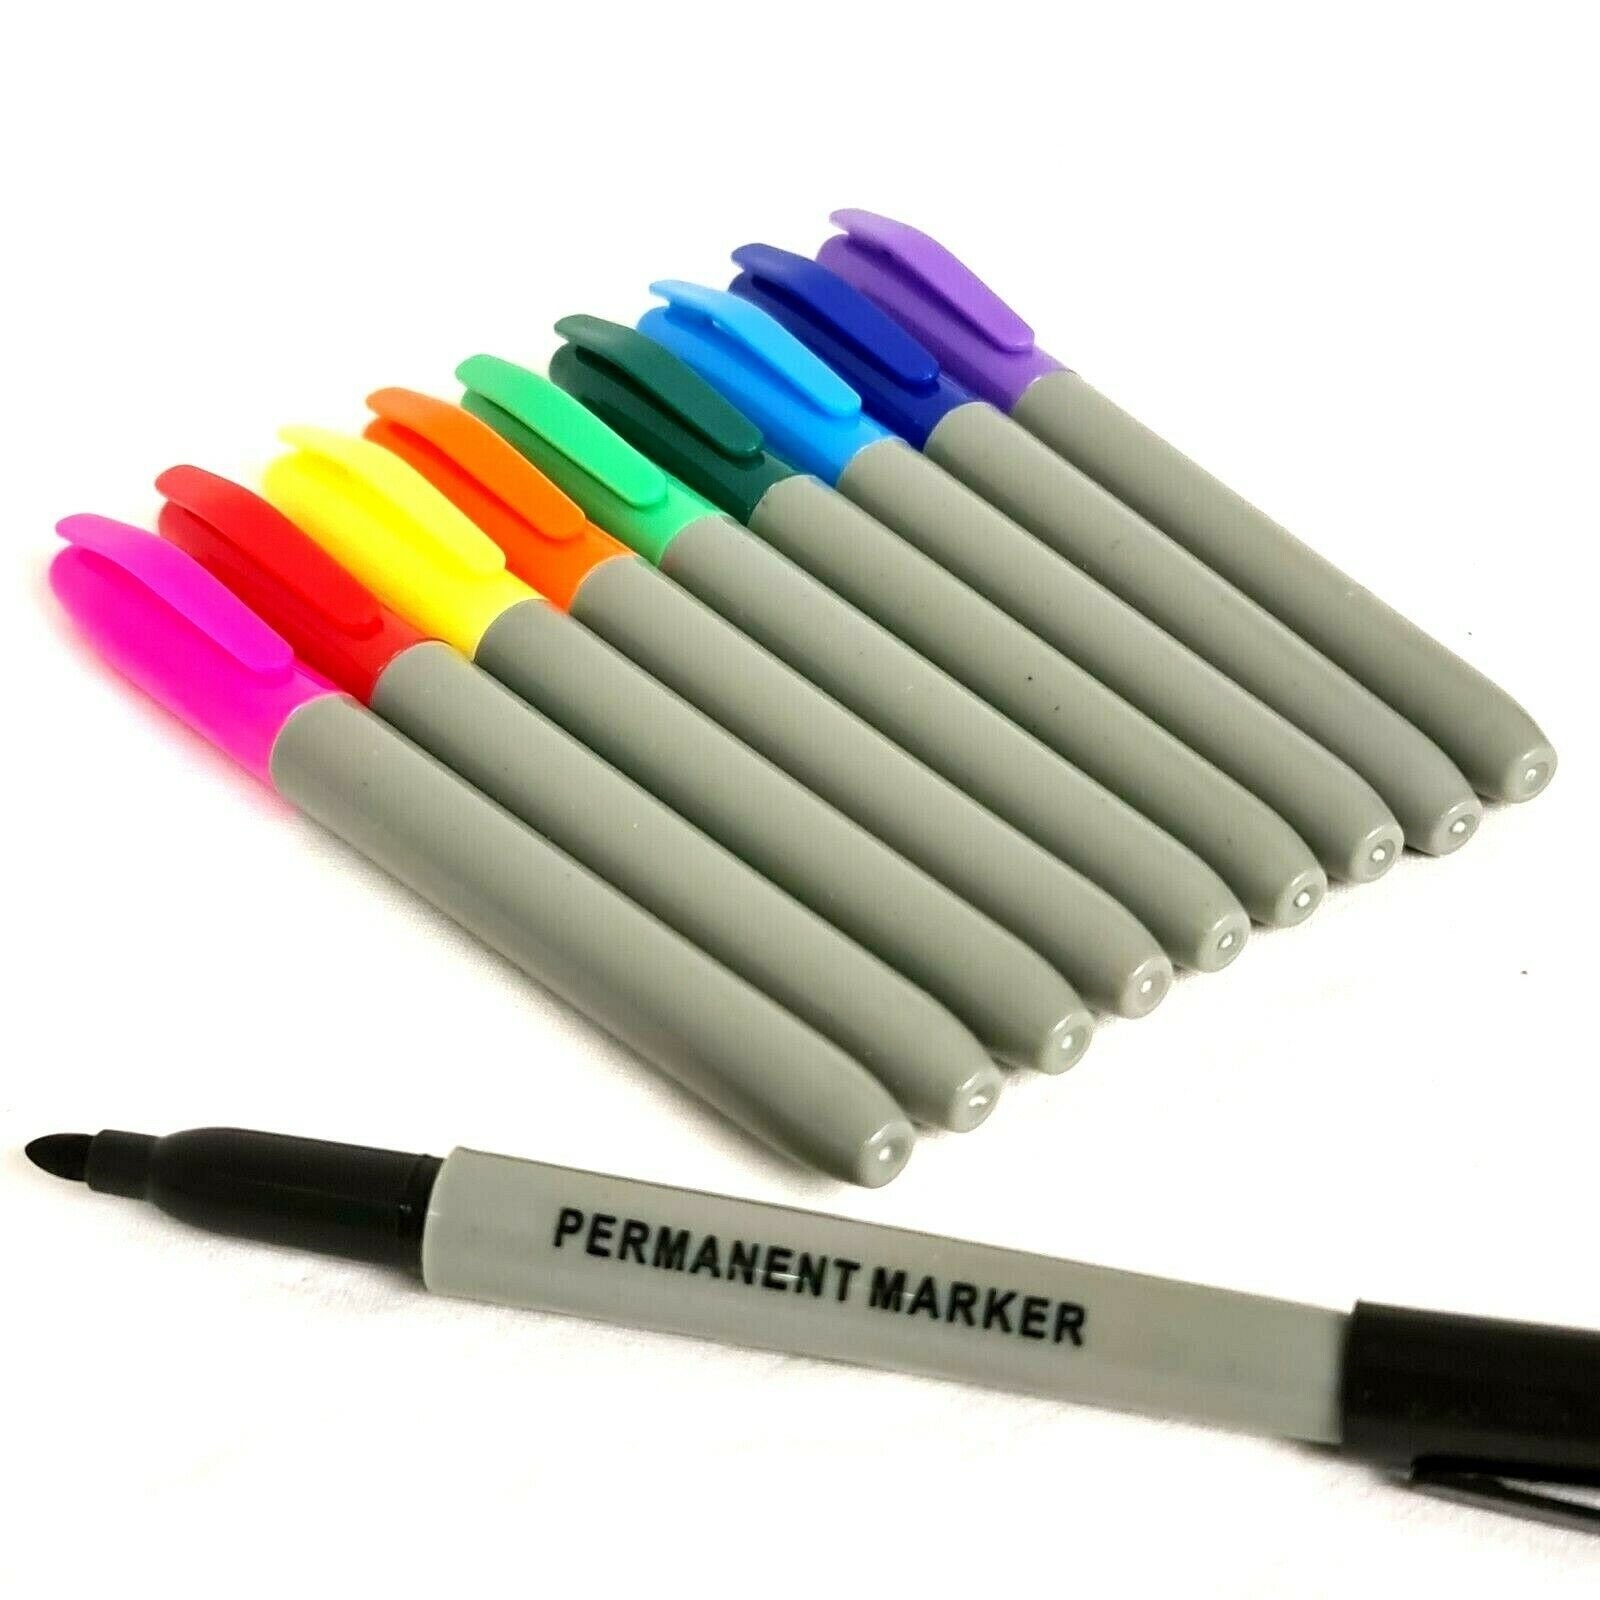 120 80 60 color alcohol pen markers, children's double nib sketch